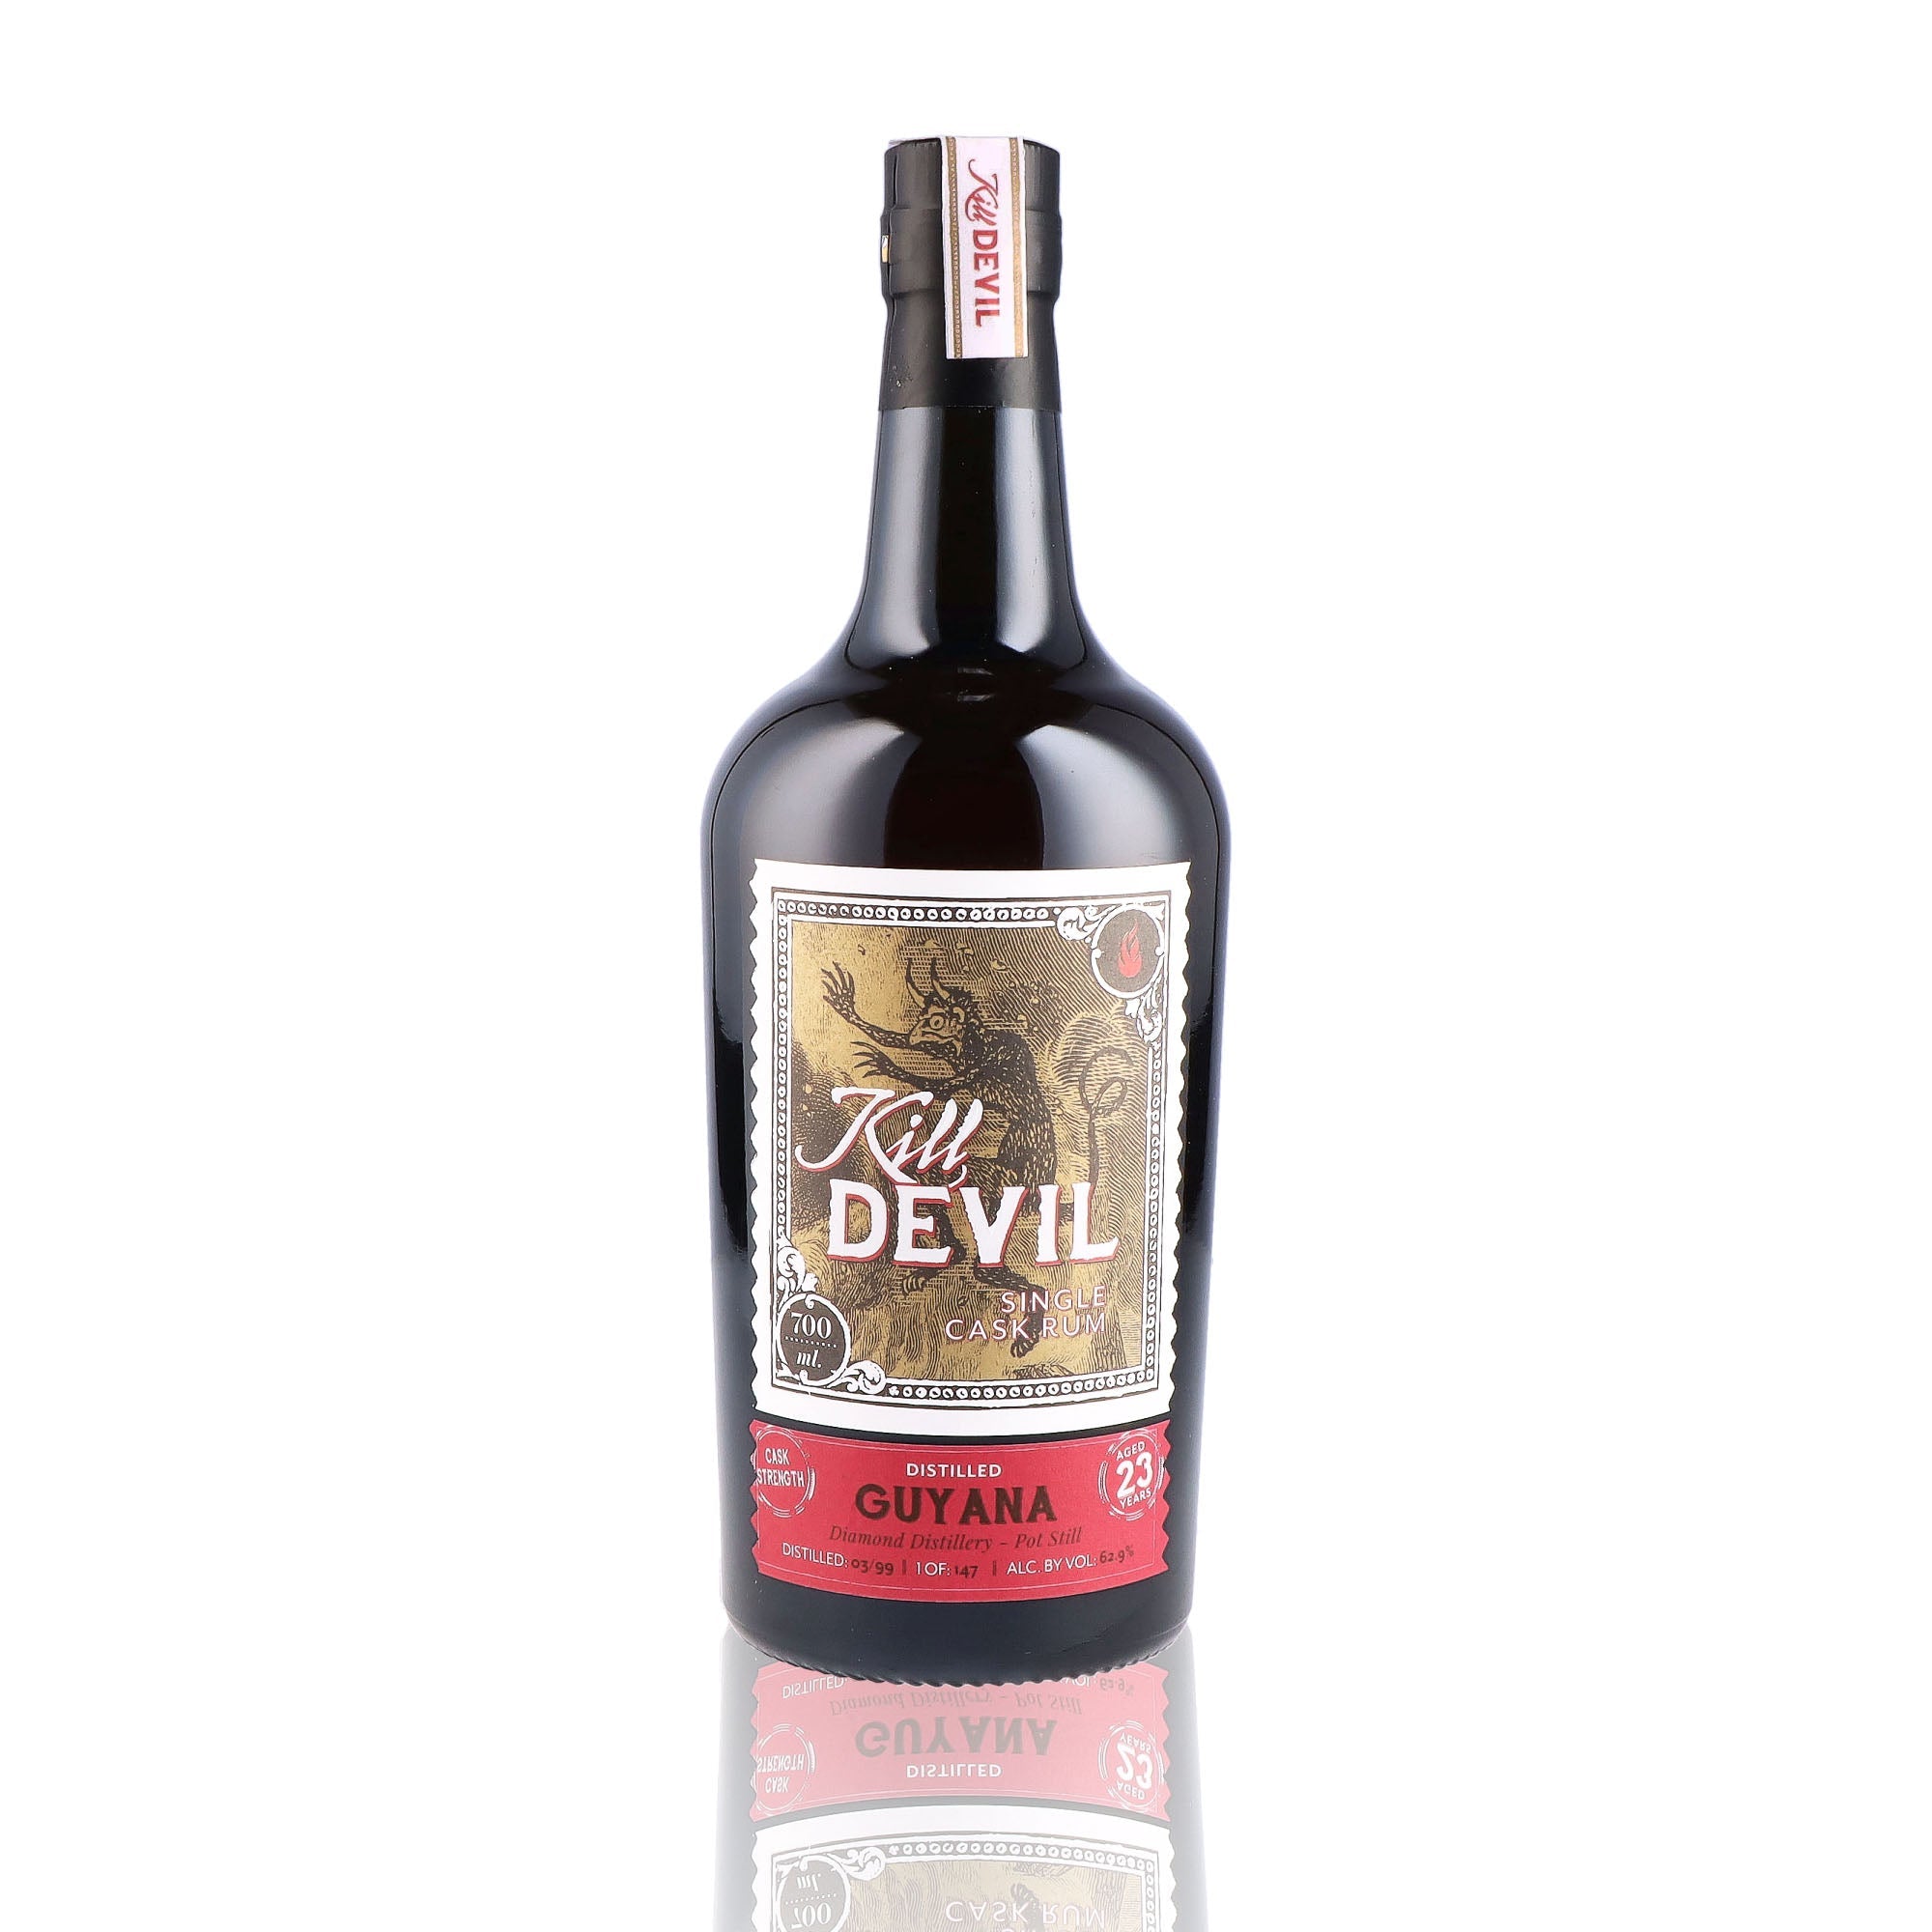 Une bouteille de rhum vieux, de la marque Kill Devil, nommée Guyana 23 ans Diamond Single Cask.